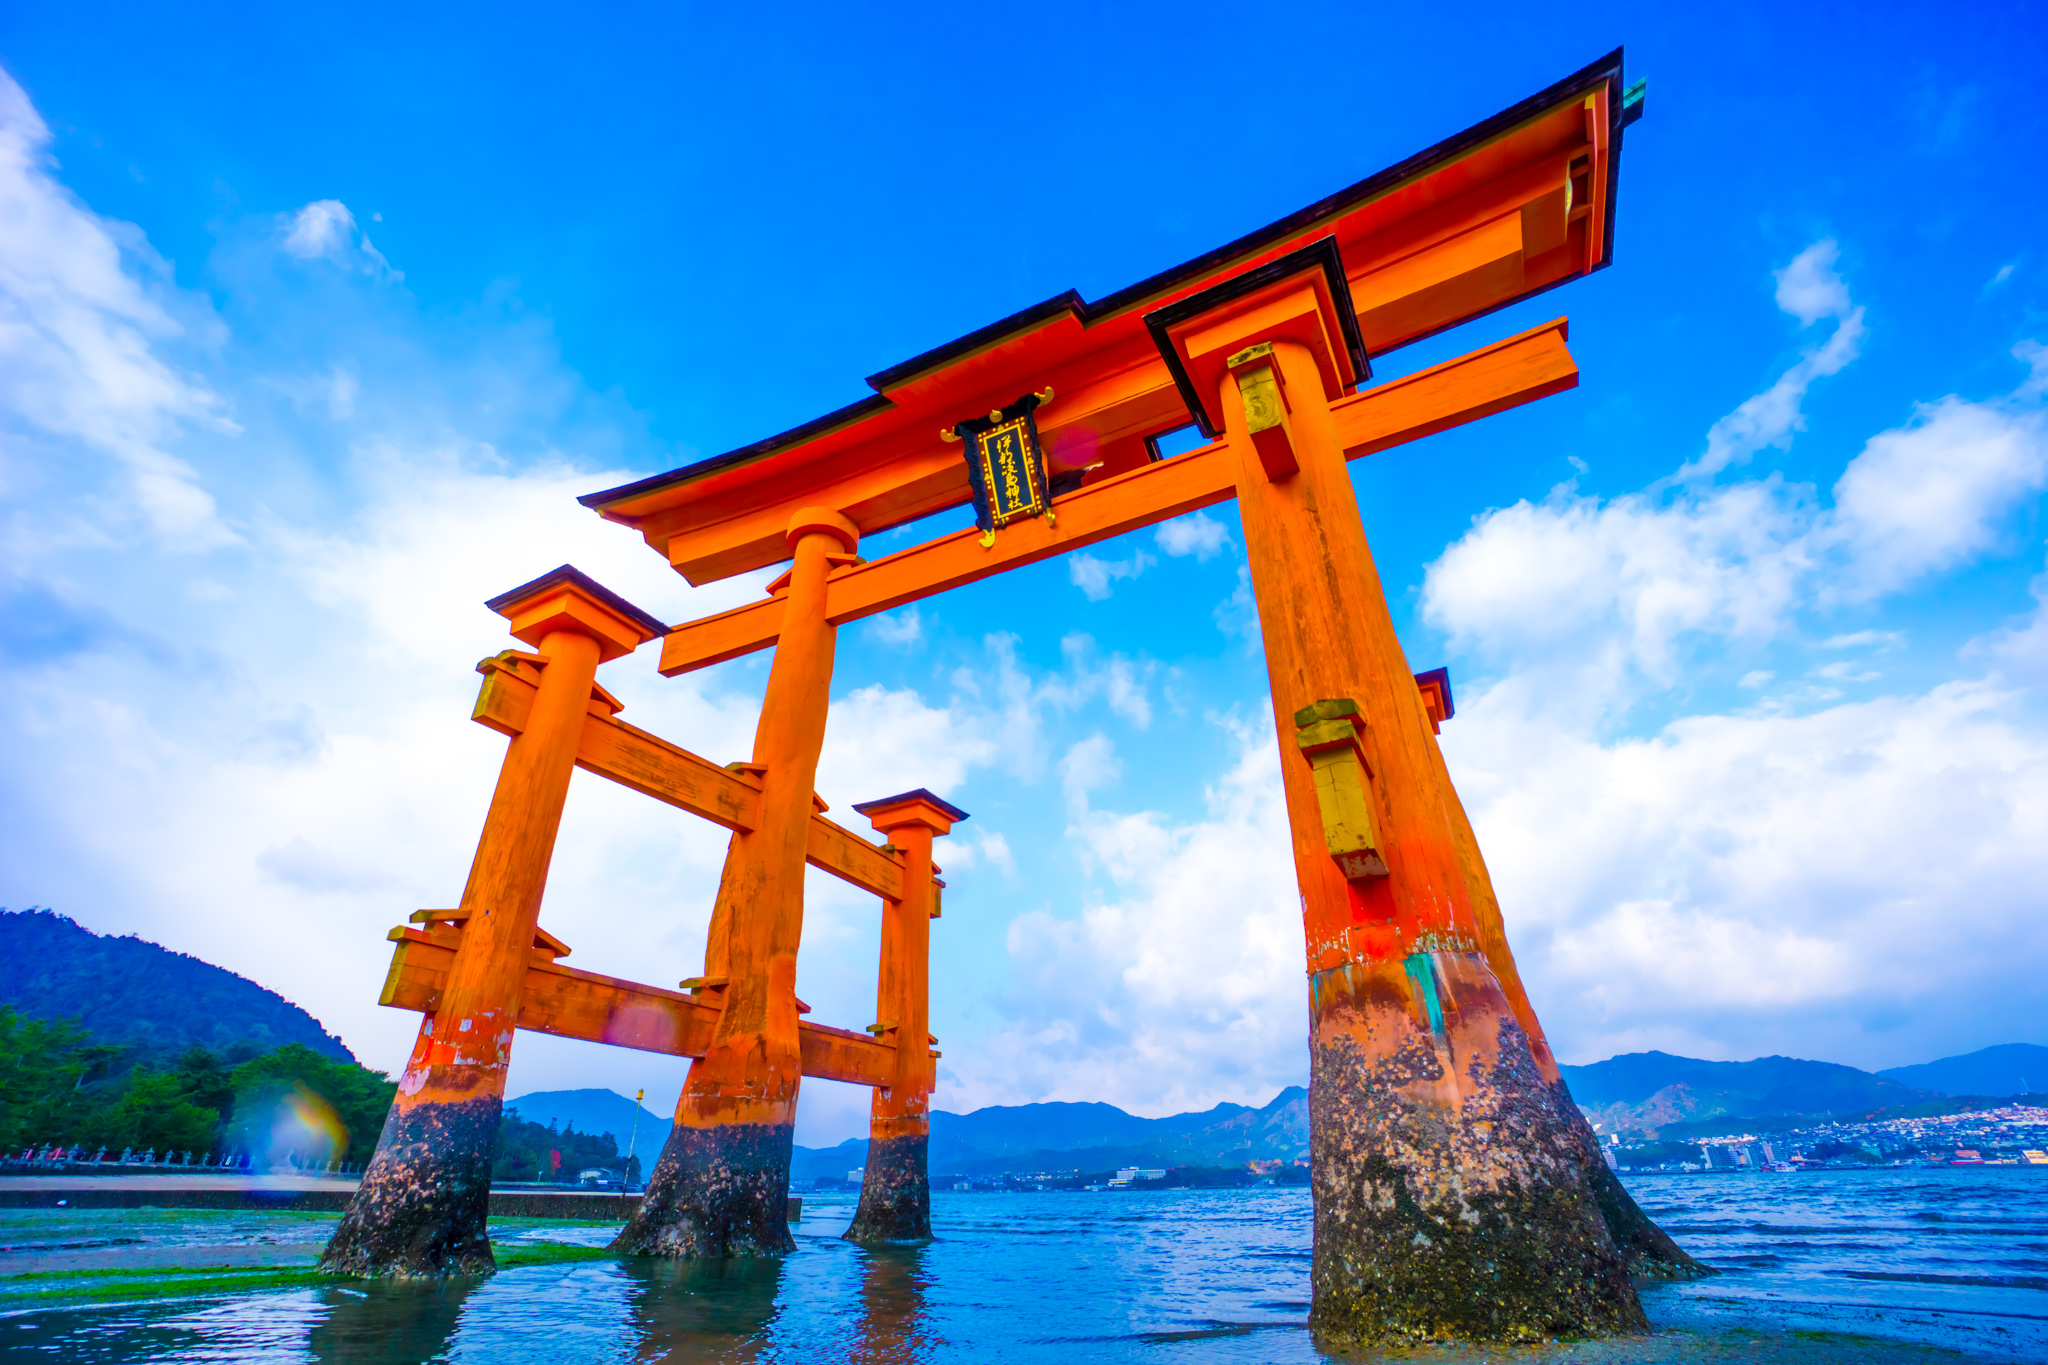 itsukushima shrine low tide featured image